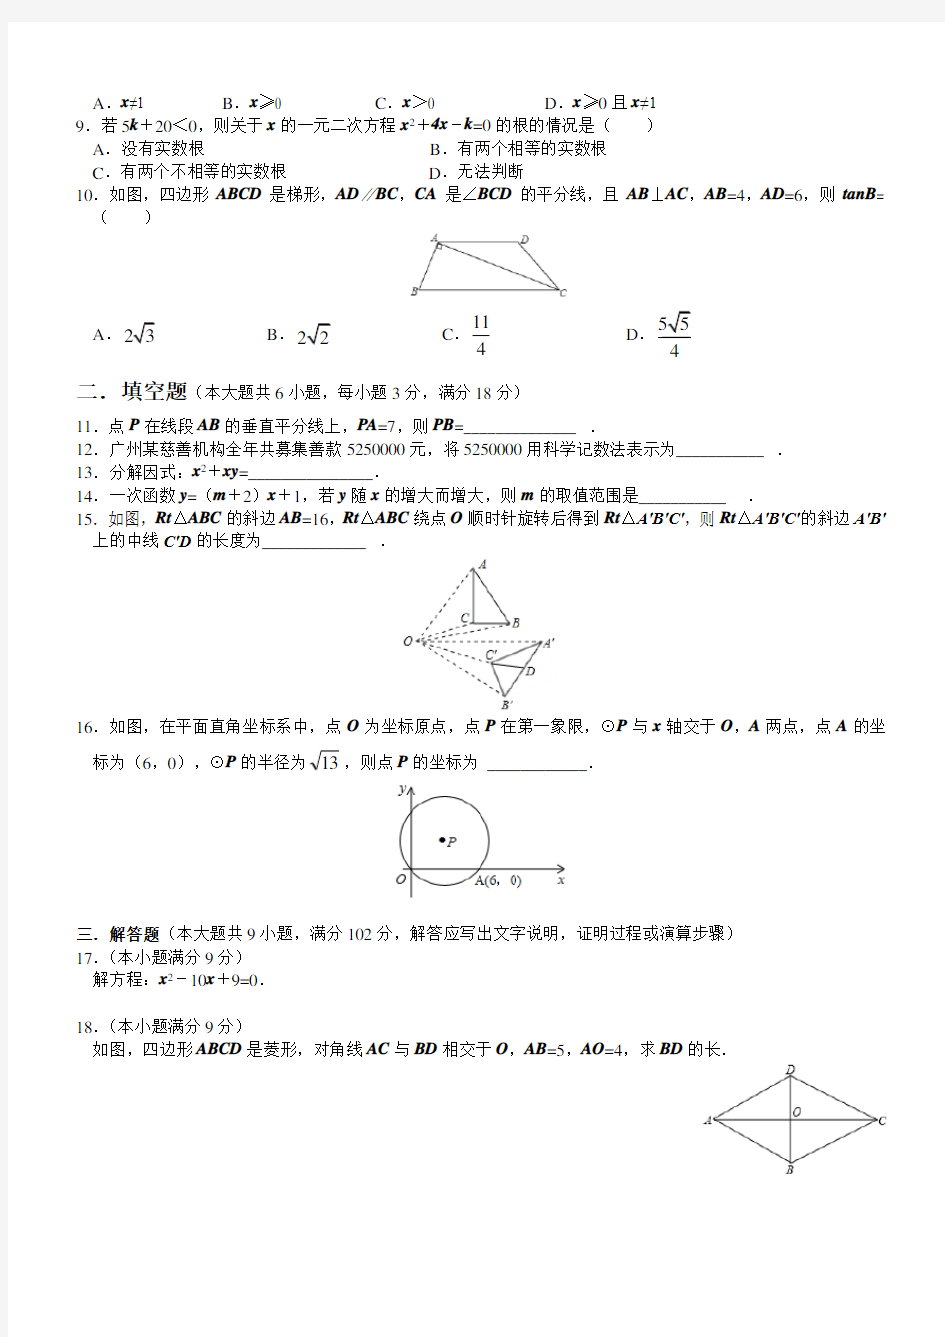 2013年广州市初中毕业生学业考试数学试卷(含详细答案解析)